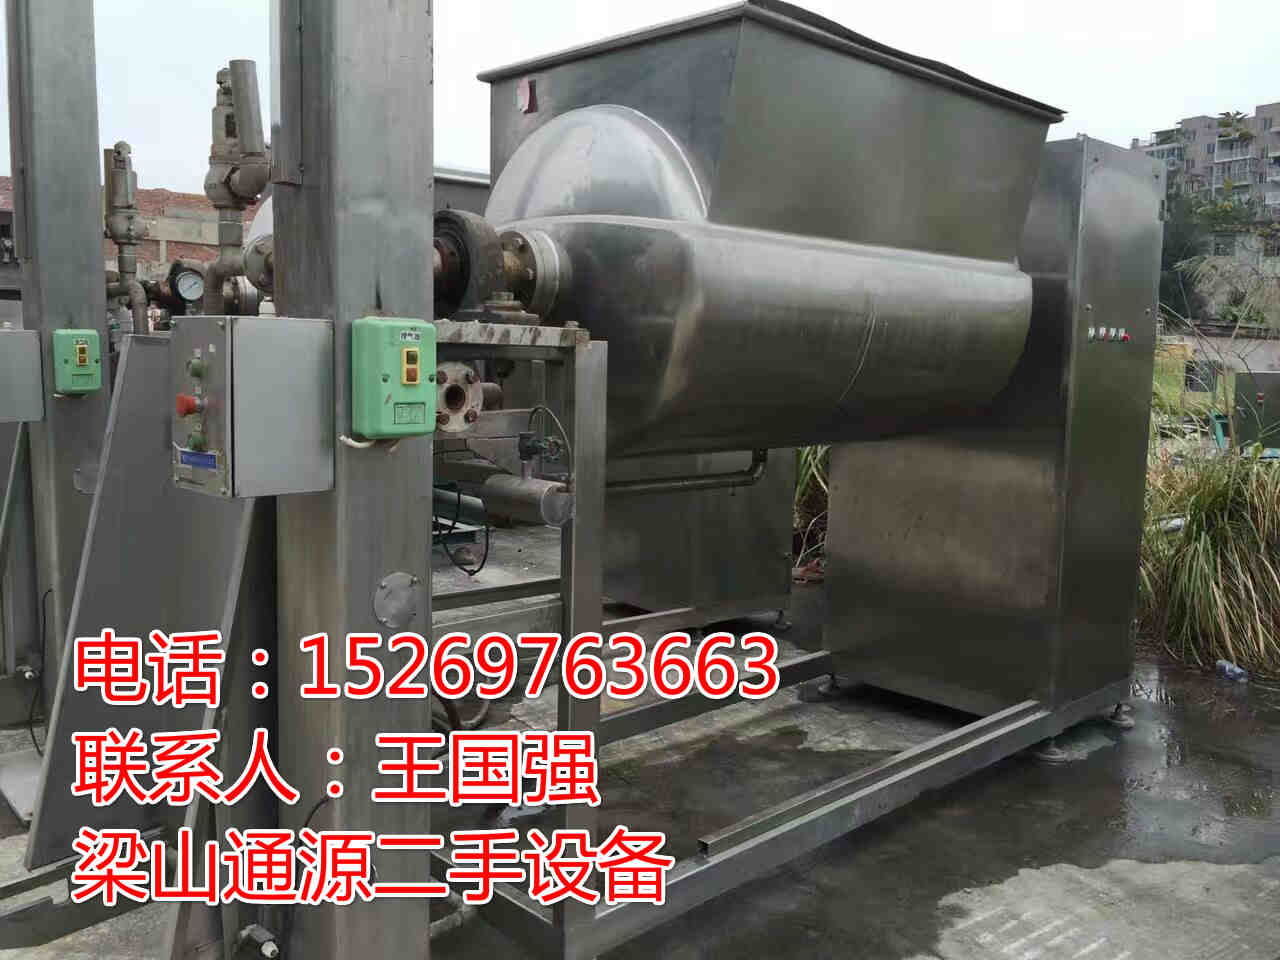 低价出售二手槽型混合机50-500升槽型混合机